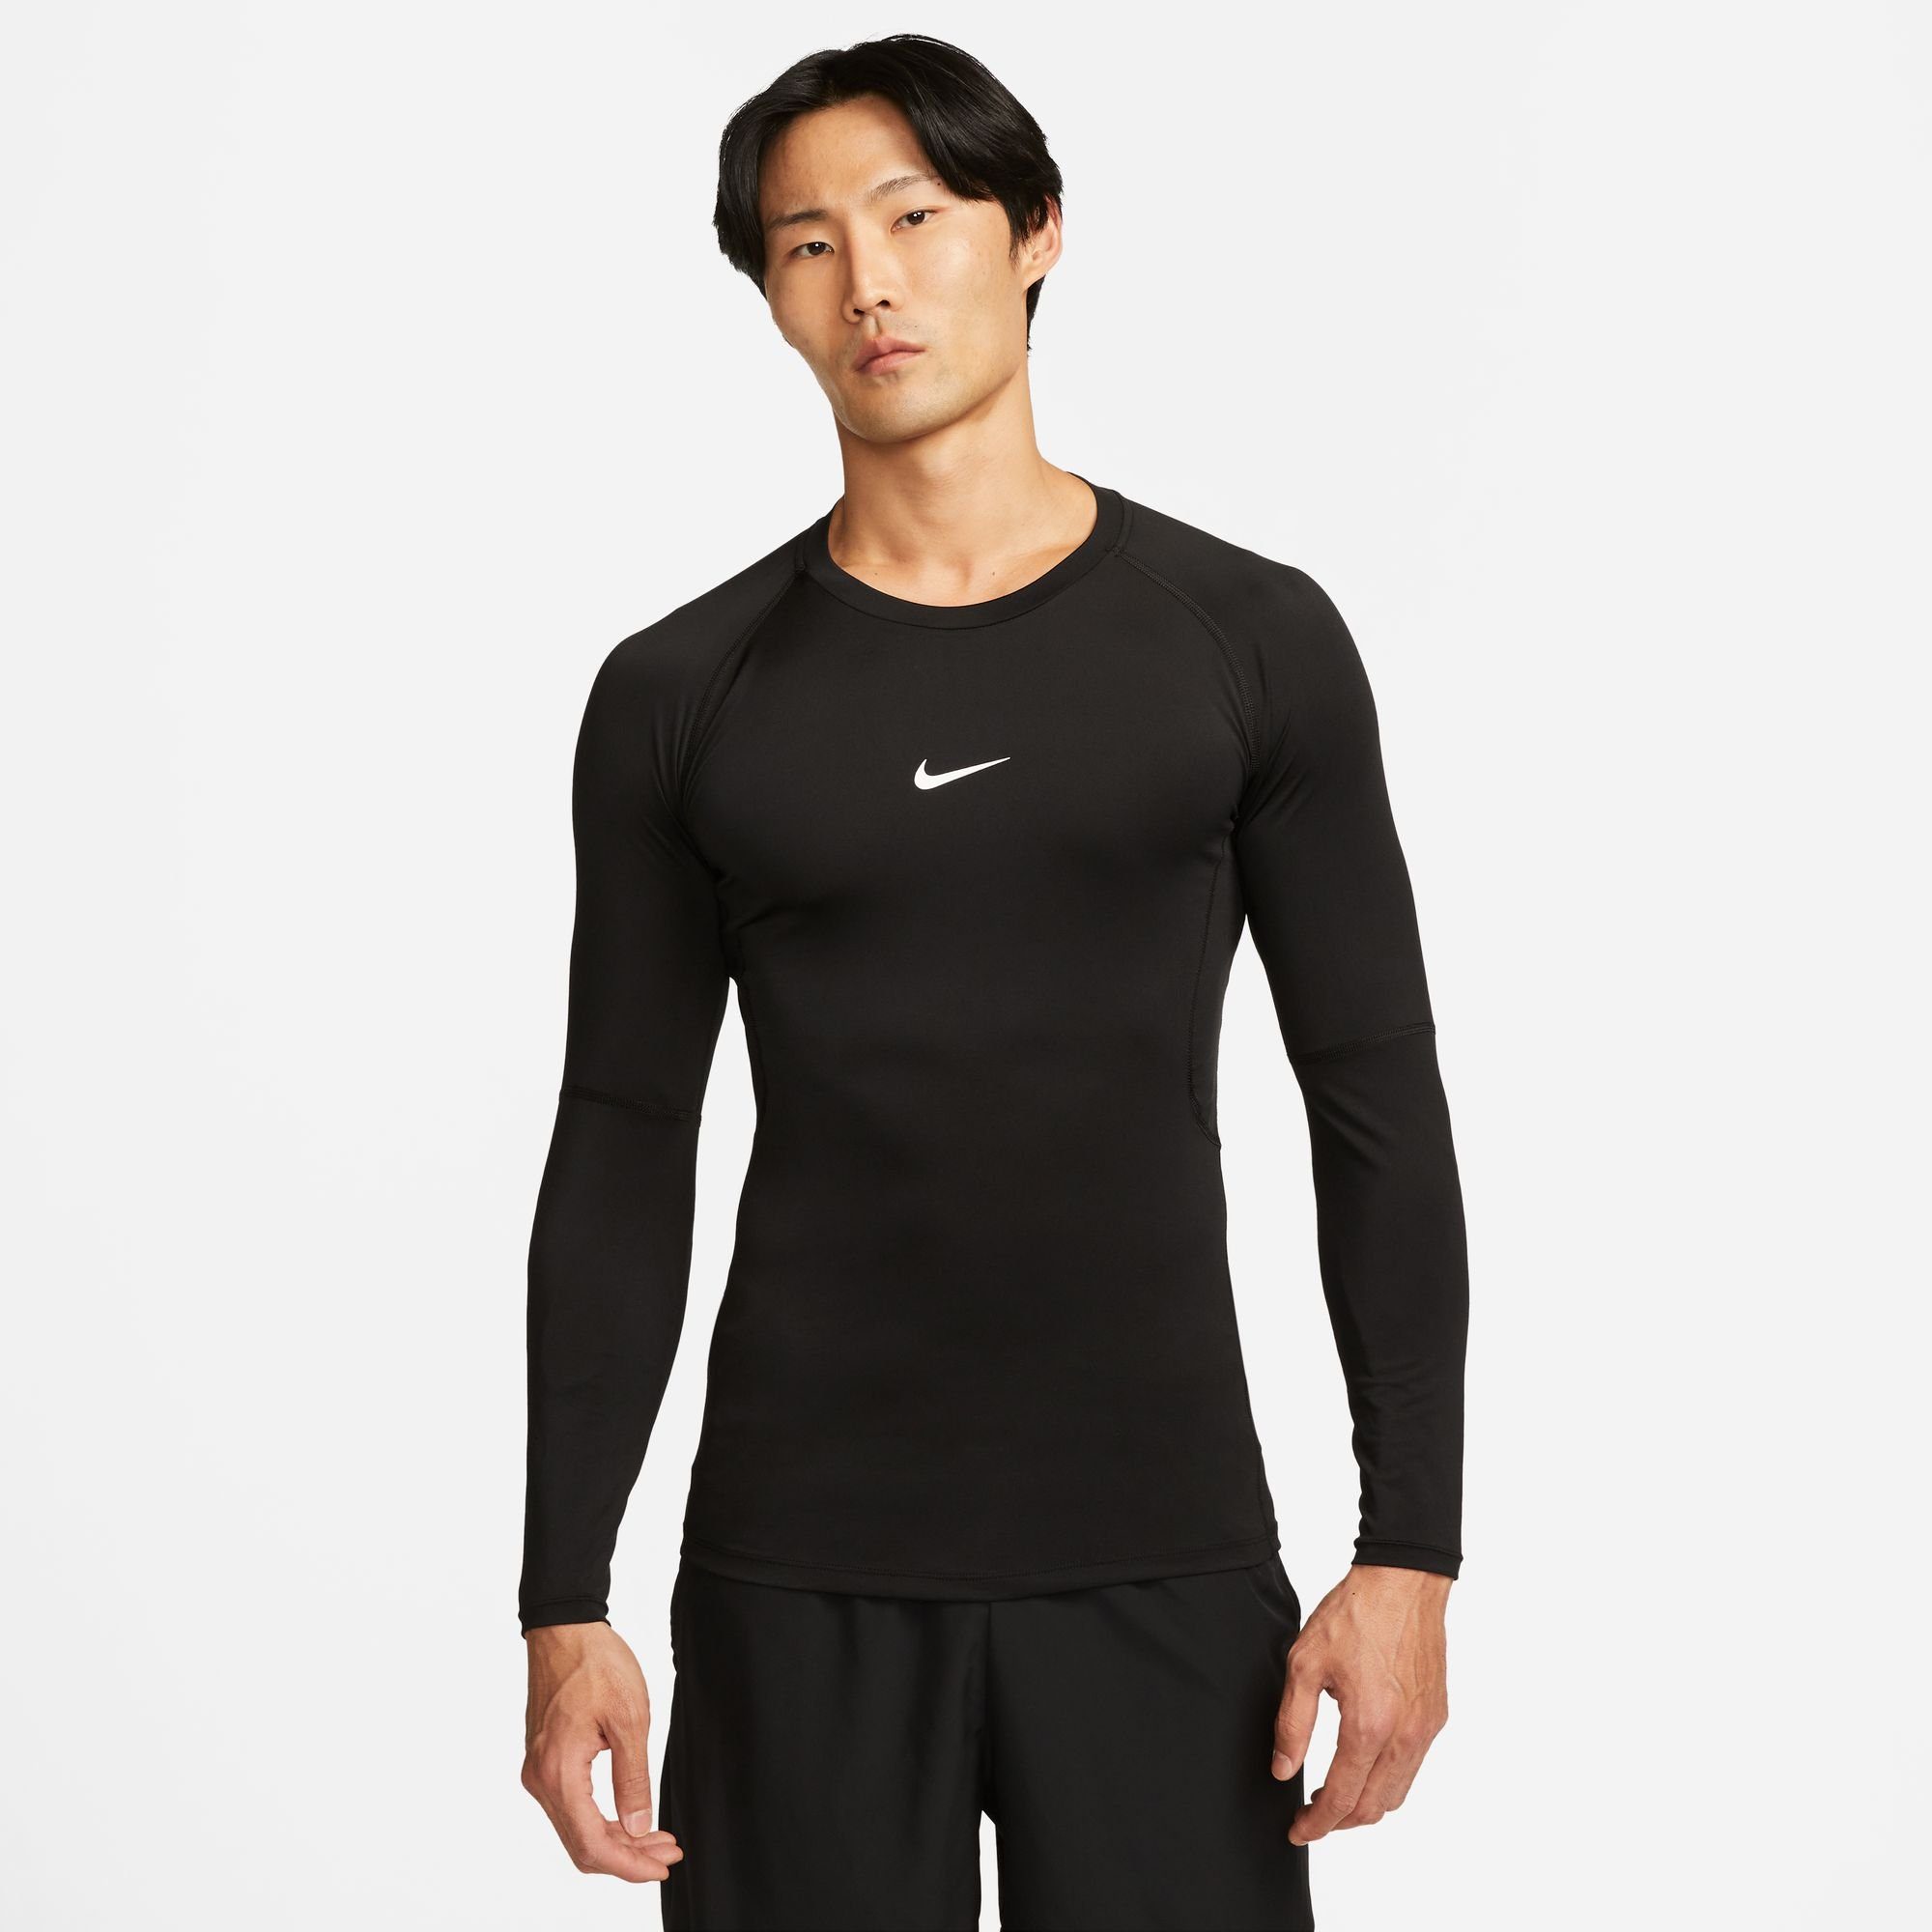 Günstiger Verkaufsstart Nike Trainingsshirt PRO DRI-FIT MEN'S LONG-SLEEVE TOP